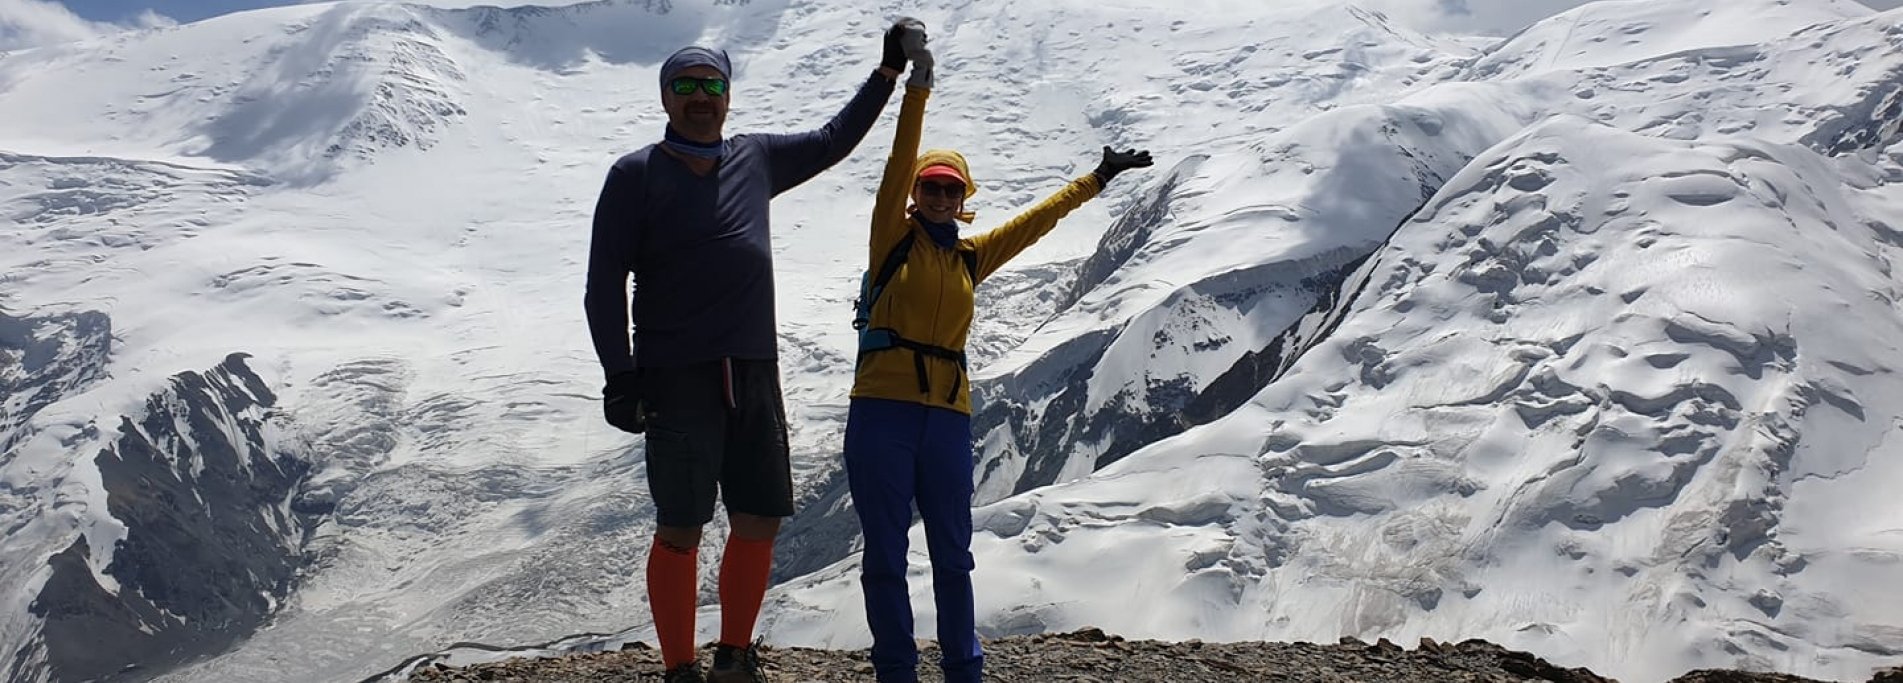 Yukhin peak 5130m - Ascent to Yukhin peak 2021